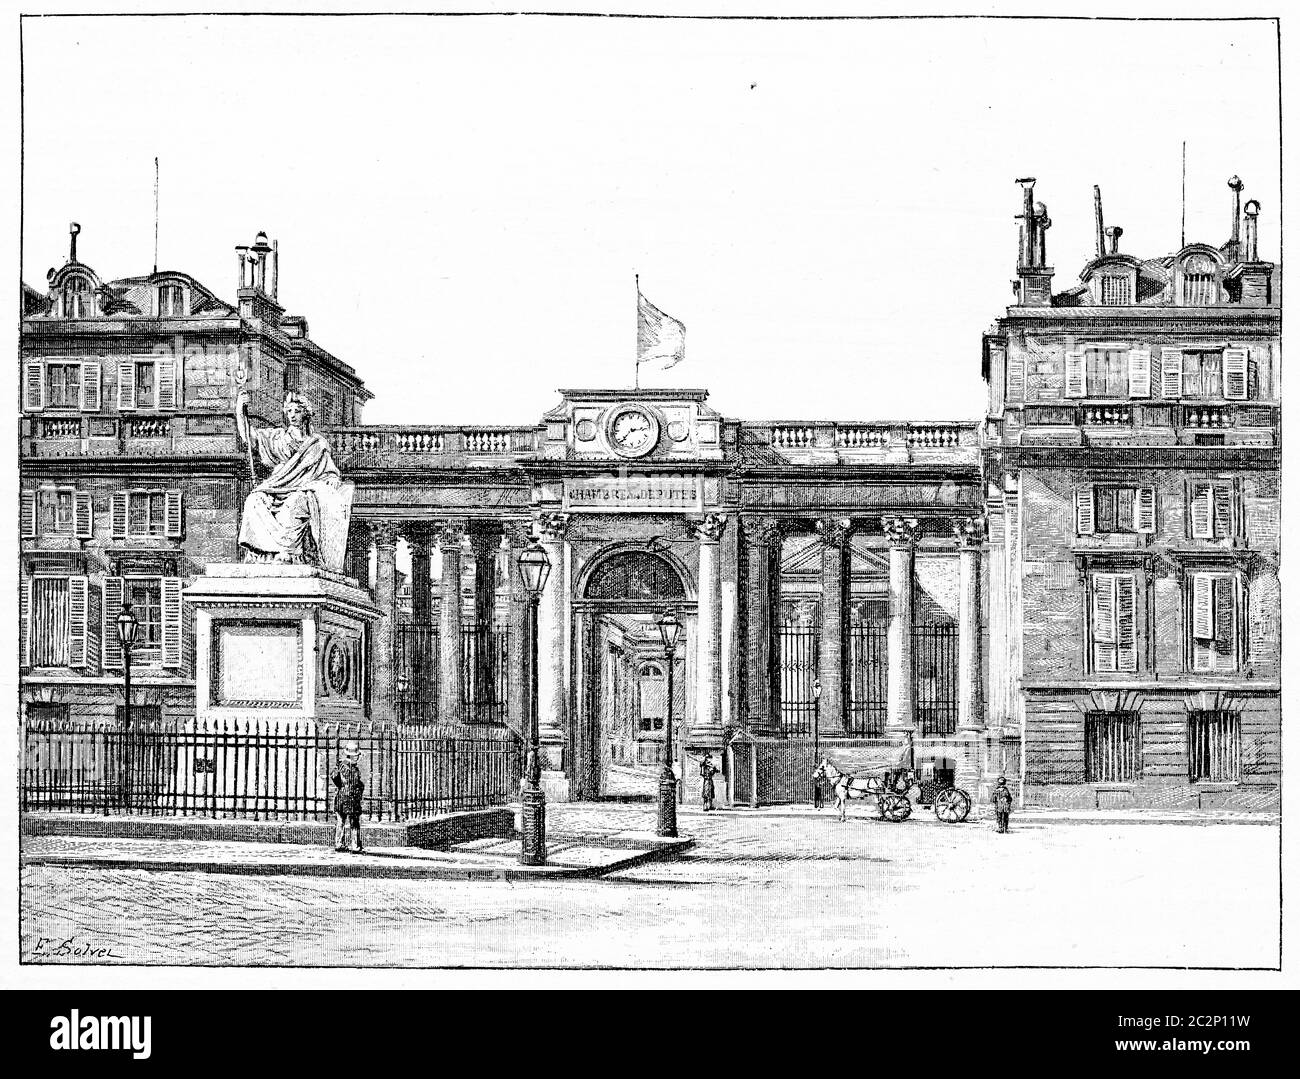 Le Palais de la Chambre des députés, salle de façade du Palais Bourbon, illustration gravée d'époque. Paris - Auguste VITU – 1890. Banque D'Images